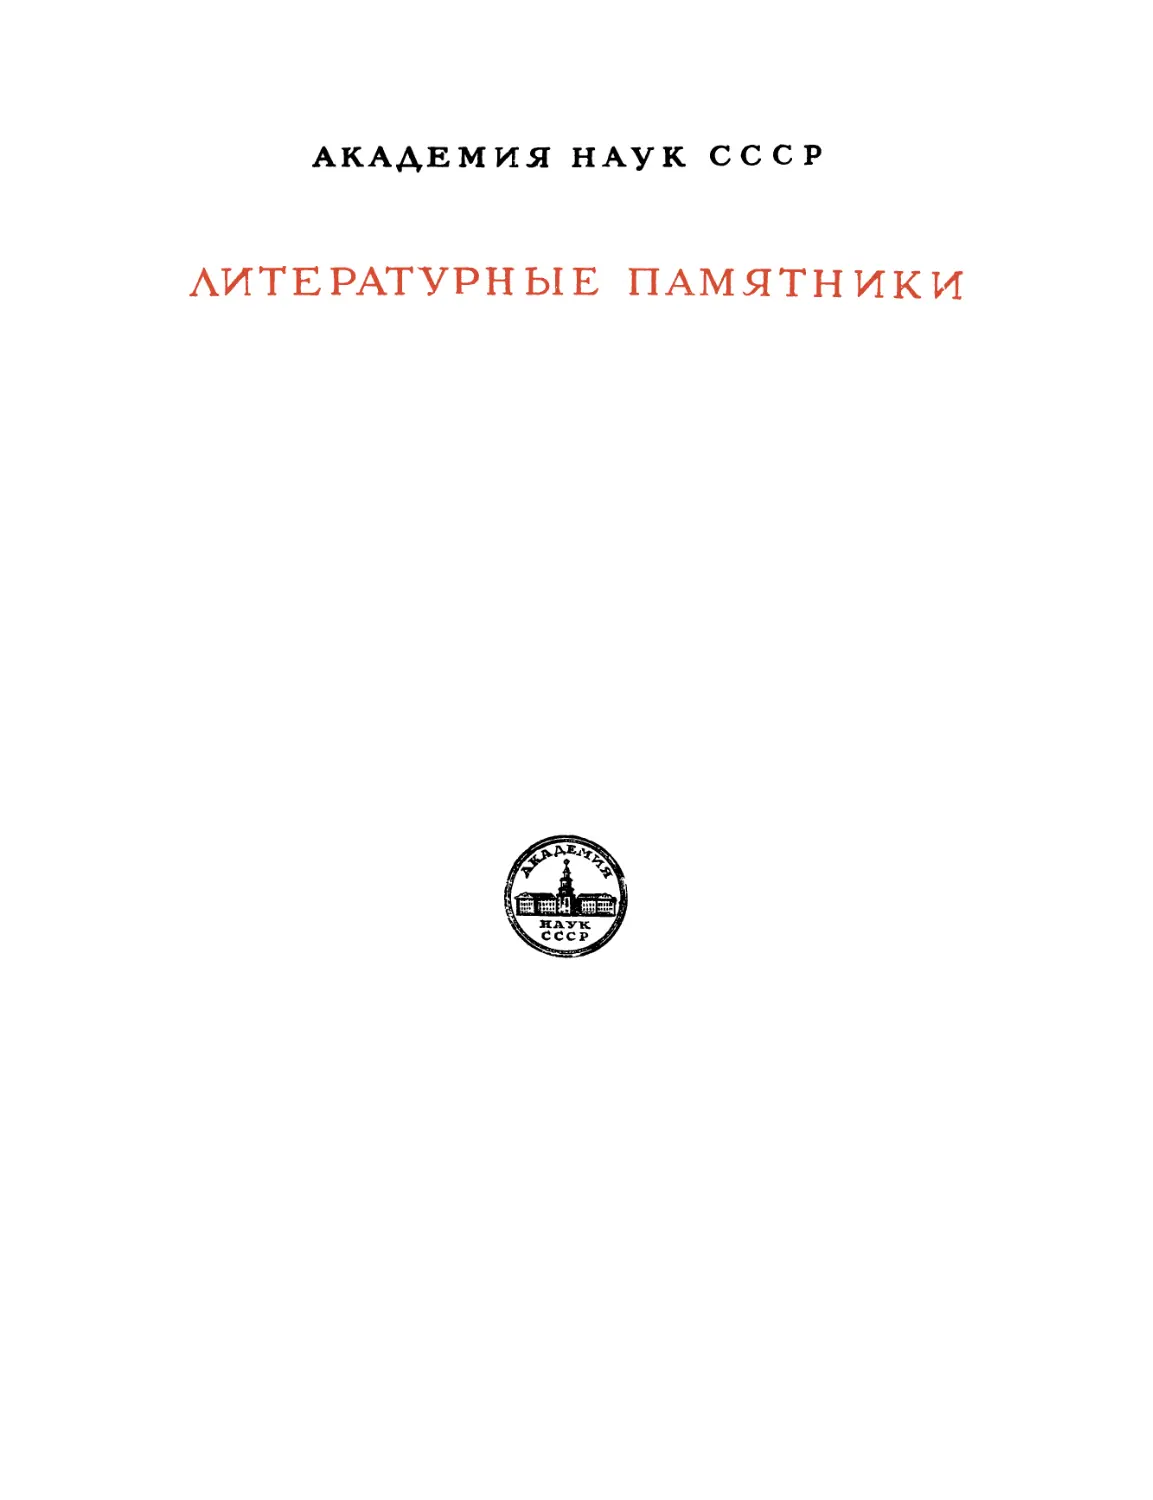 Симеон Полоцкий. Избранные сочинения - 1953